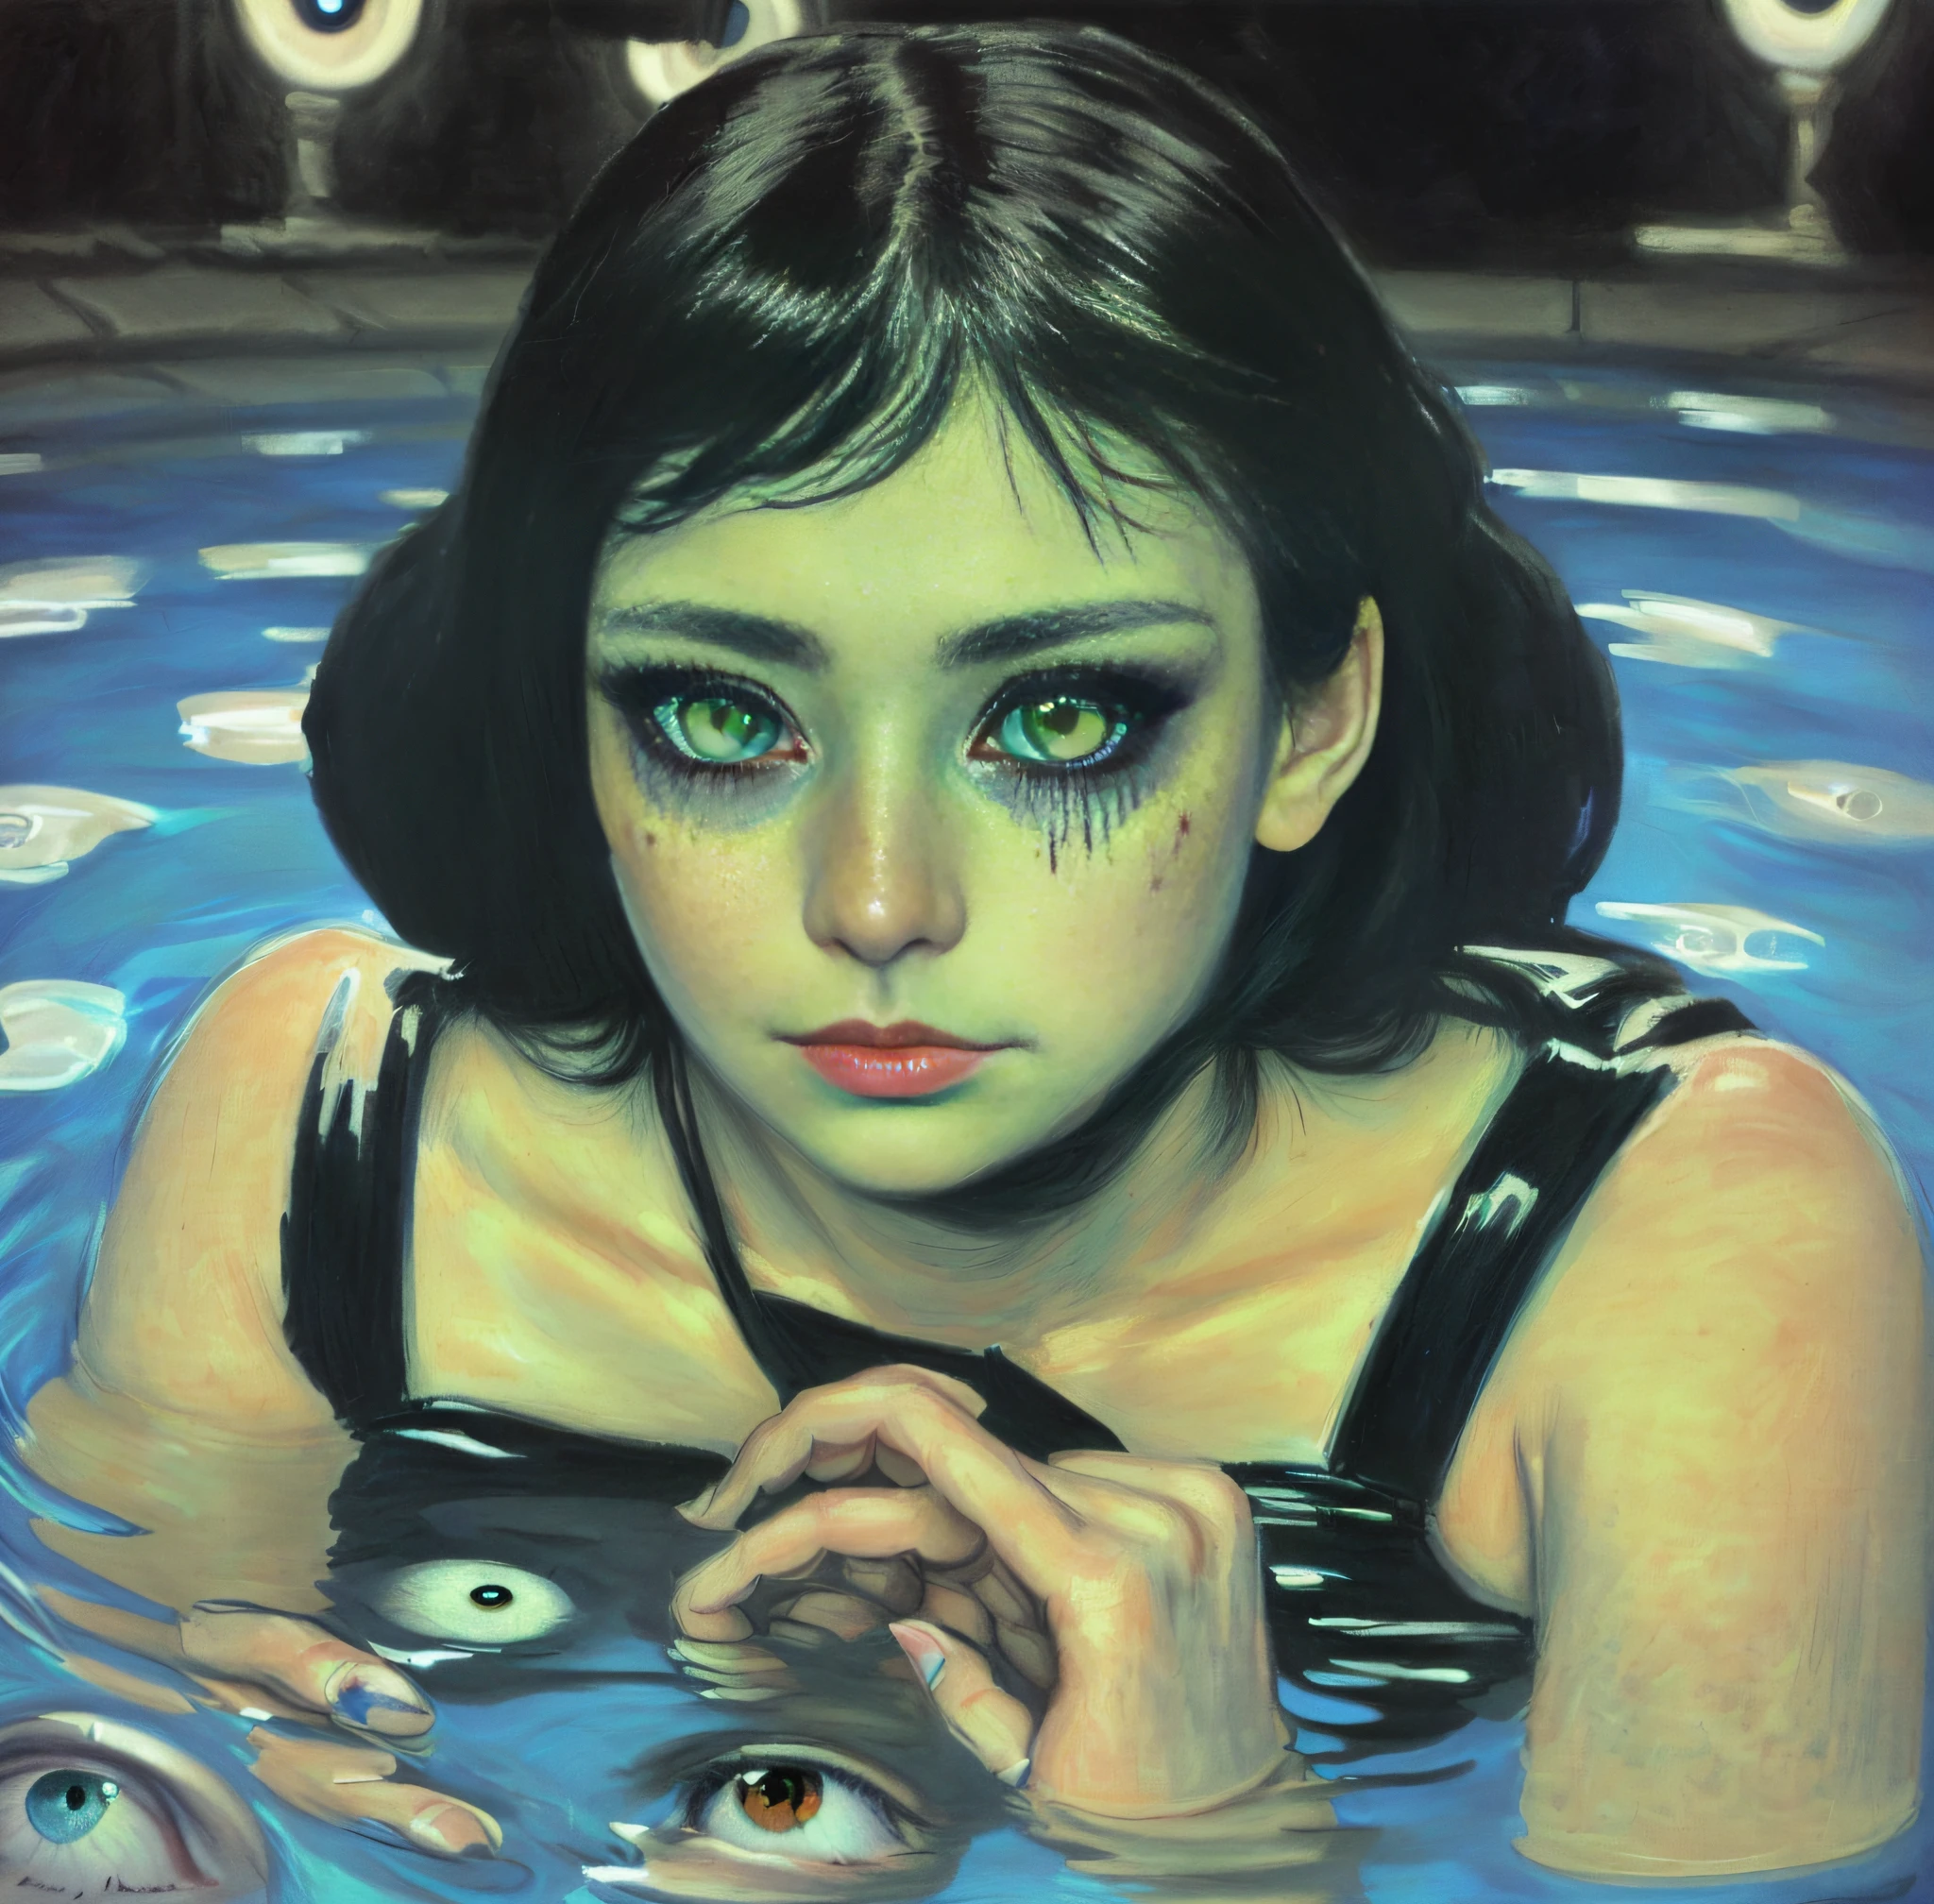 Da liegt eine Frau mit Augen in einem Wasserbecken, by Ayami Kojima, bedeckt mit menschlichen Augen, inspiriert von Laurie Lipton, zahlreiche schwach leuchtende Augen, Mädchen mit weißen Augen, chie yoshii, inspiriert von Ryohei Hase, Horror surreale Kunst, Hunderte von Augen, by Grete Stern, unheimlich!!, unheimlich surrealism, Beängstigend, verrückter Ausdruck, richtig machen , richtige Augen, richtige Hände, sehr detaillierte Augen